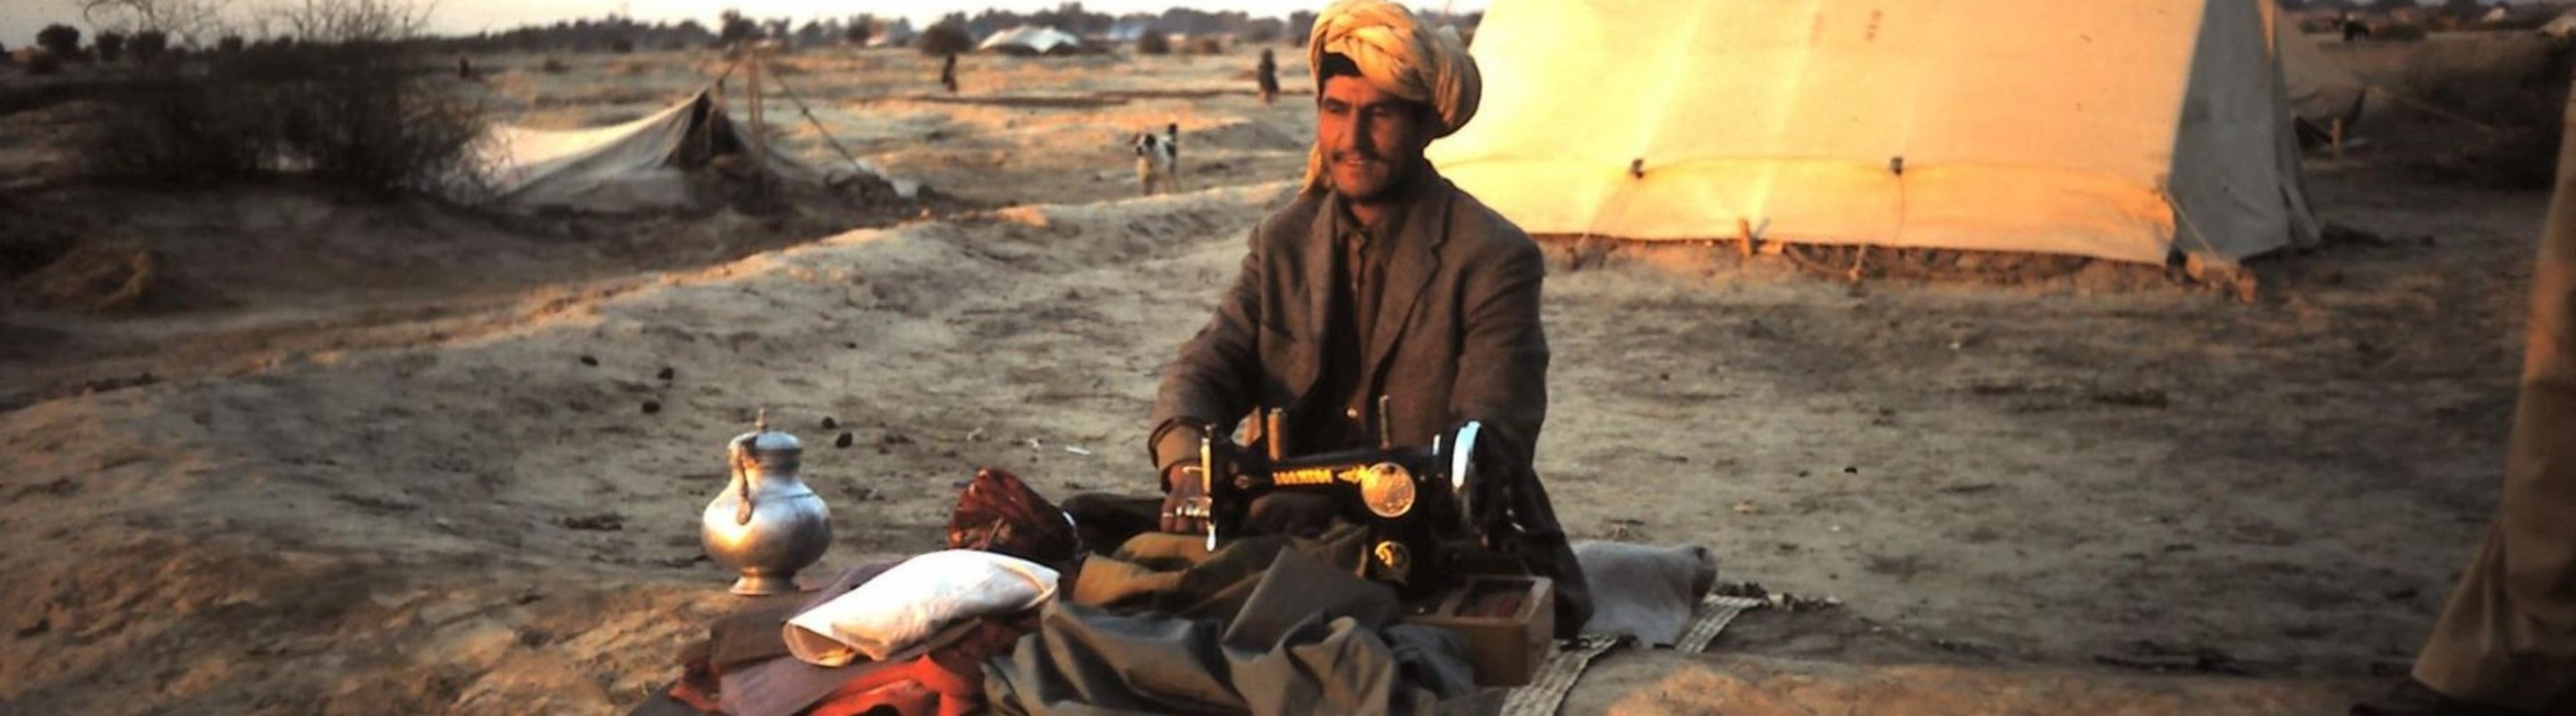 Ein afghanischer Mann mit Nähmaschine